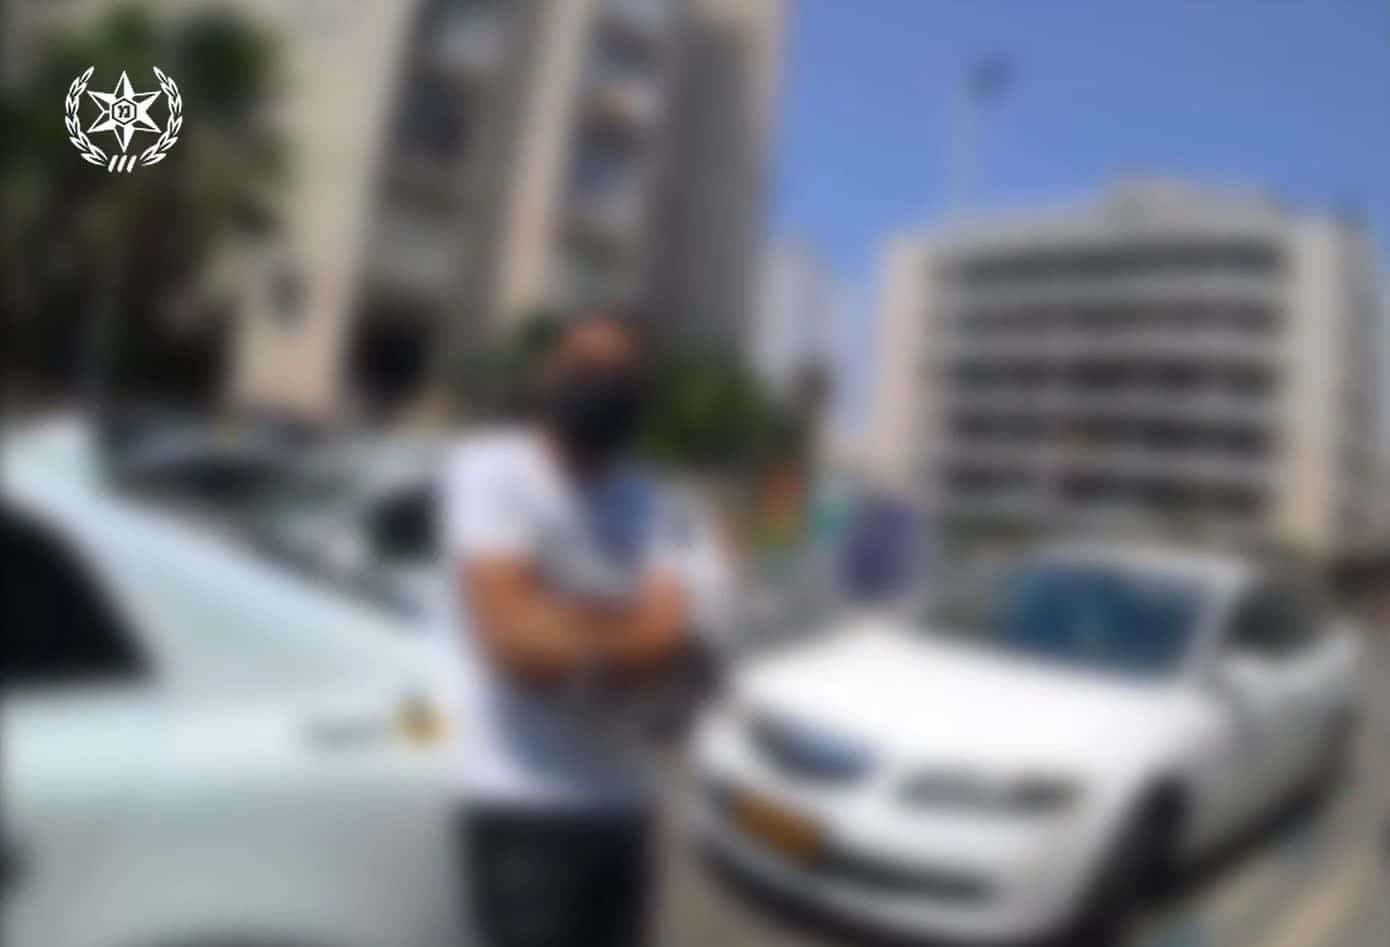 בעל המספרה לאחר שנתפס- צילום דוברות משטרת ישראל